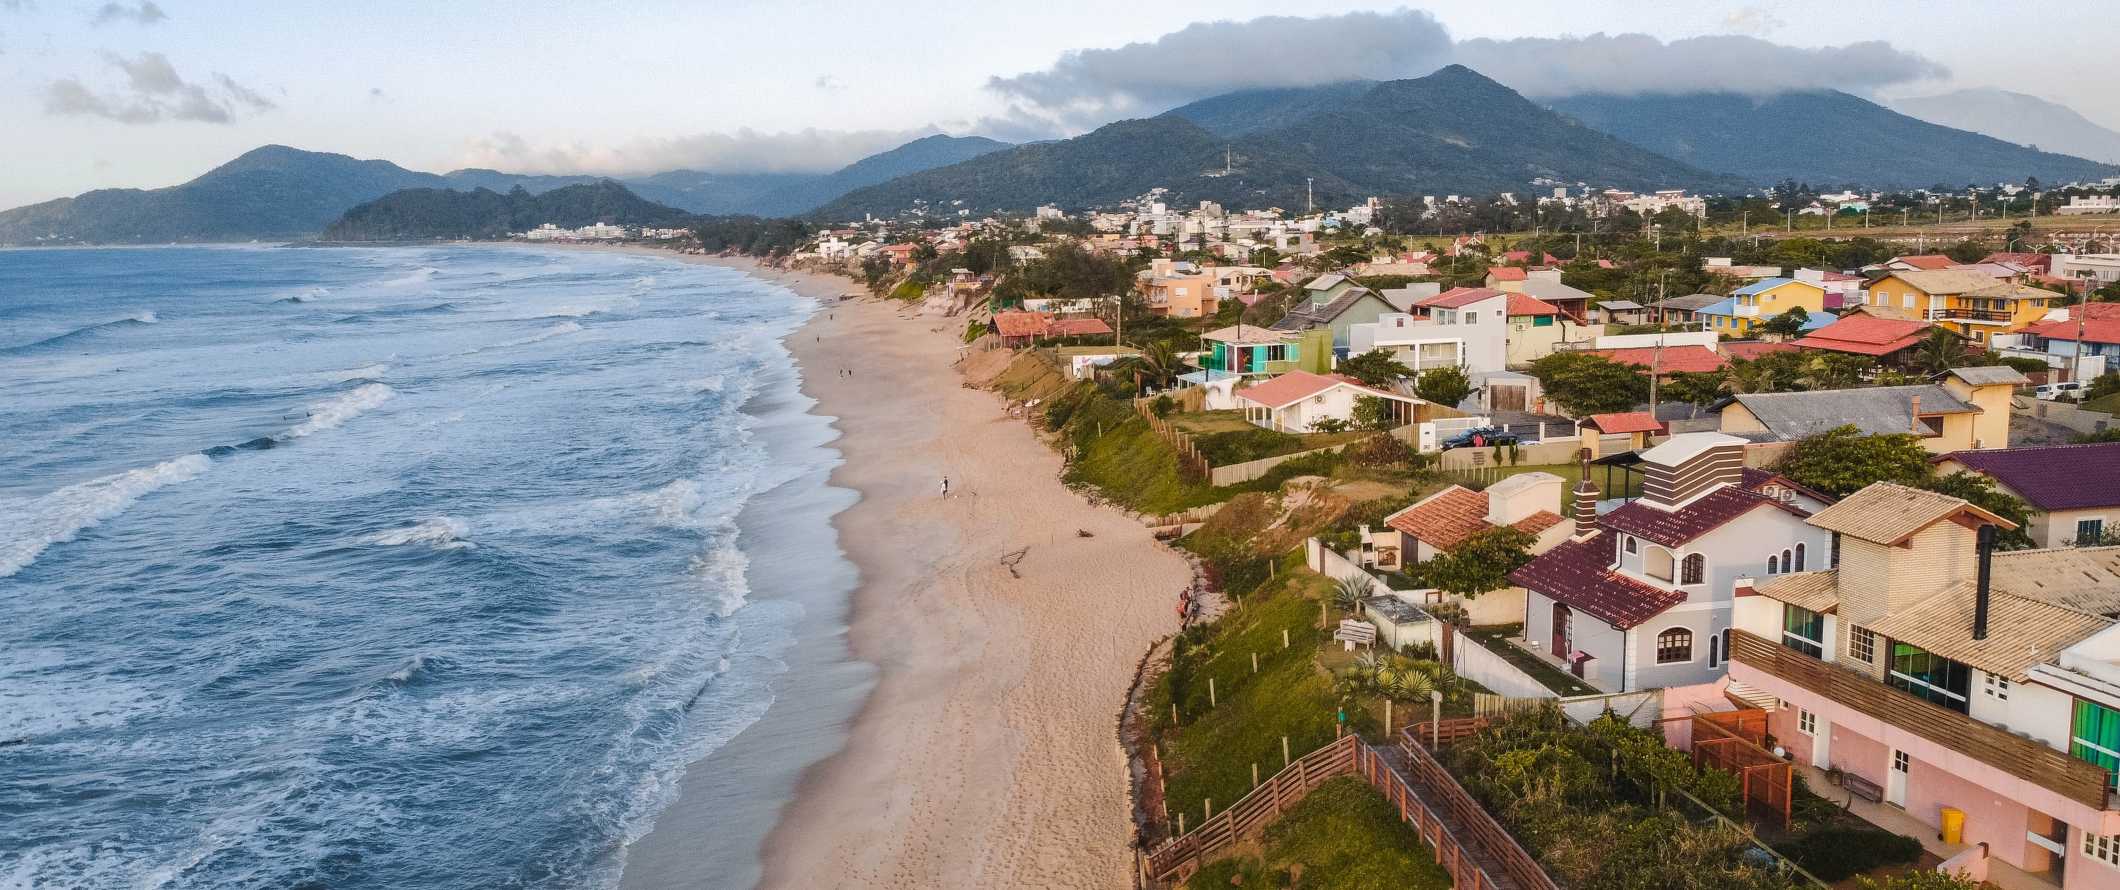 Casas mult i-coloridas ao longo da praia com montanhas em segundo plano em Florinopolis, Brasil